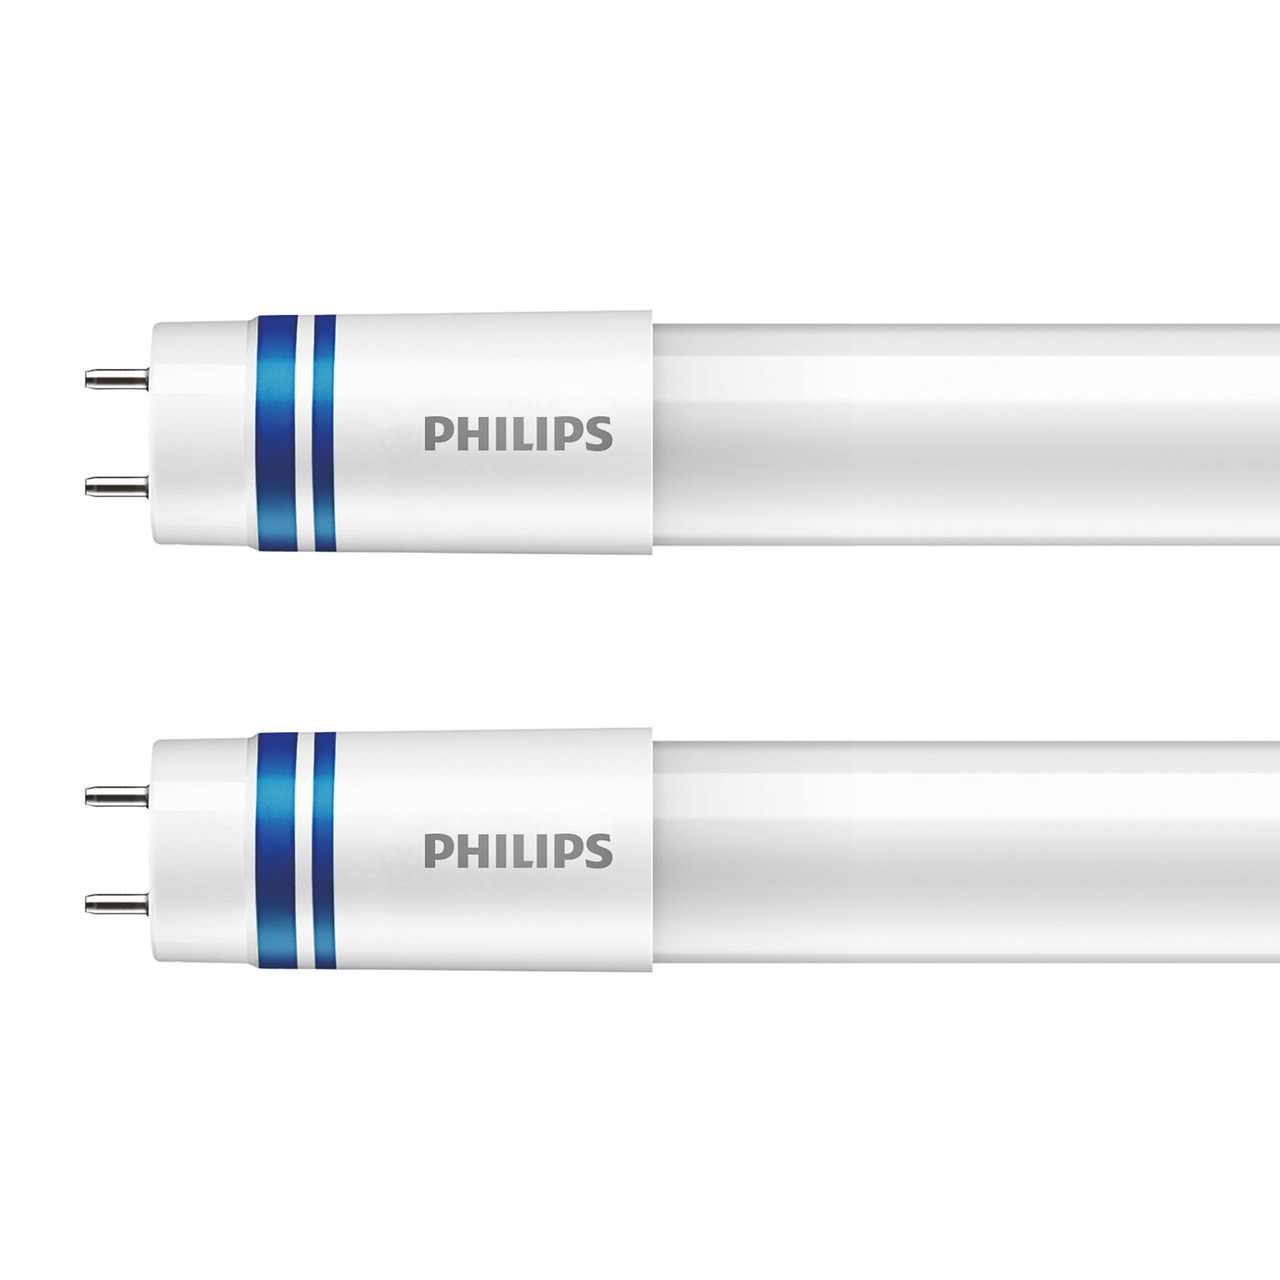 Philips 2er-Set 24-W-T8-LED-Rhrenlampe LEDtube UO InstatFit- 3700 lm- kaltweiss- EVG- 150 cm unter Beleuchtung